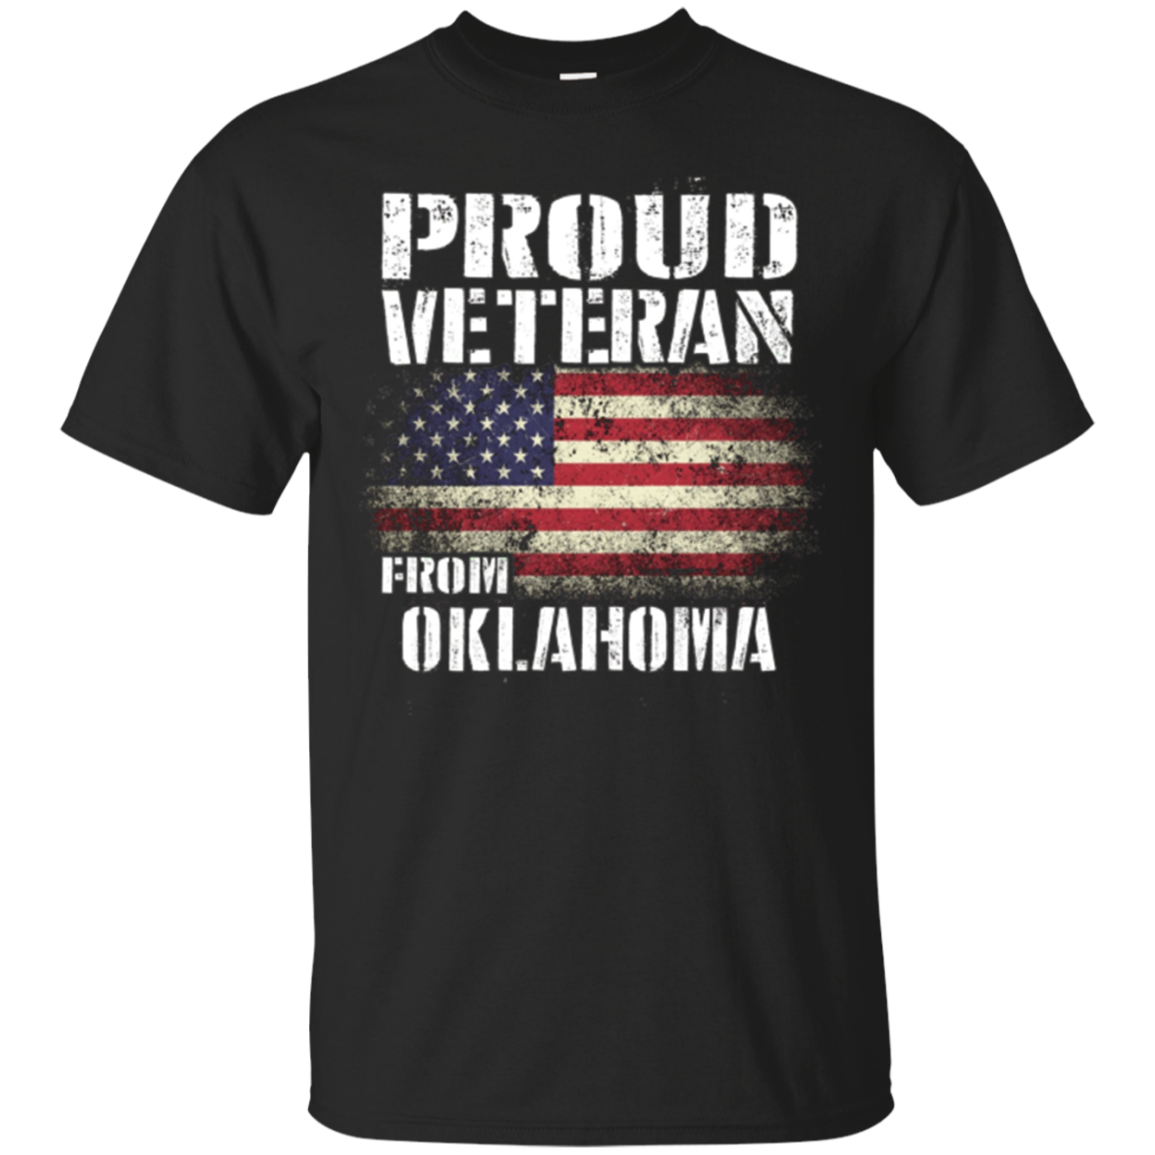 Oklahoma Veteran Shirt - Veterans Appreciation Gifts